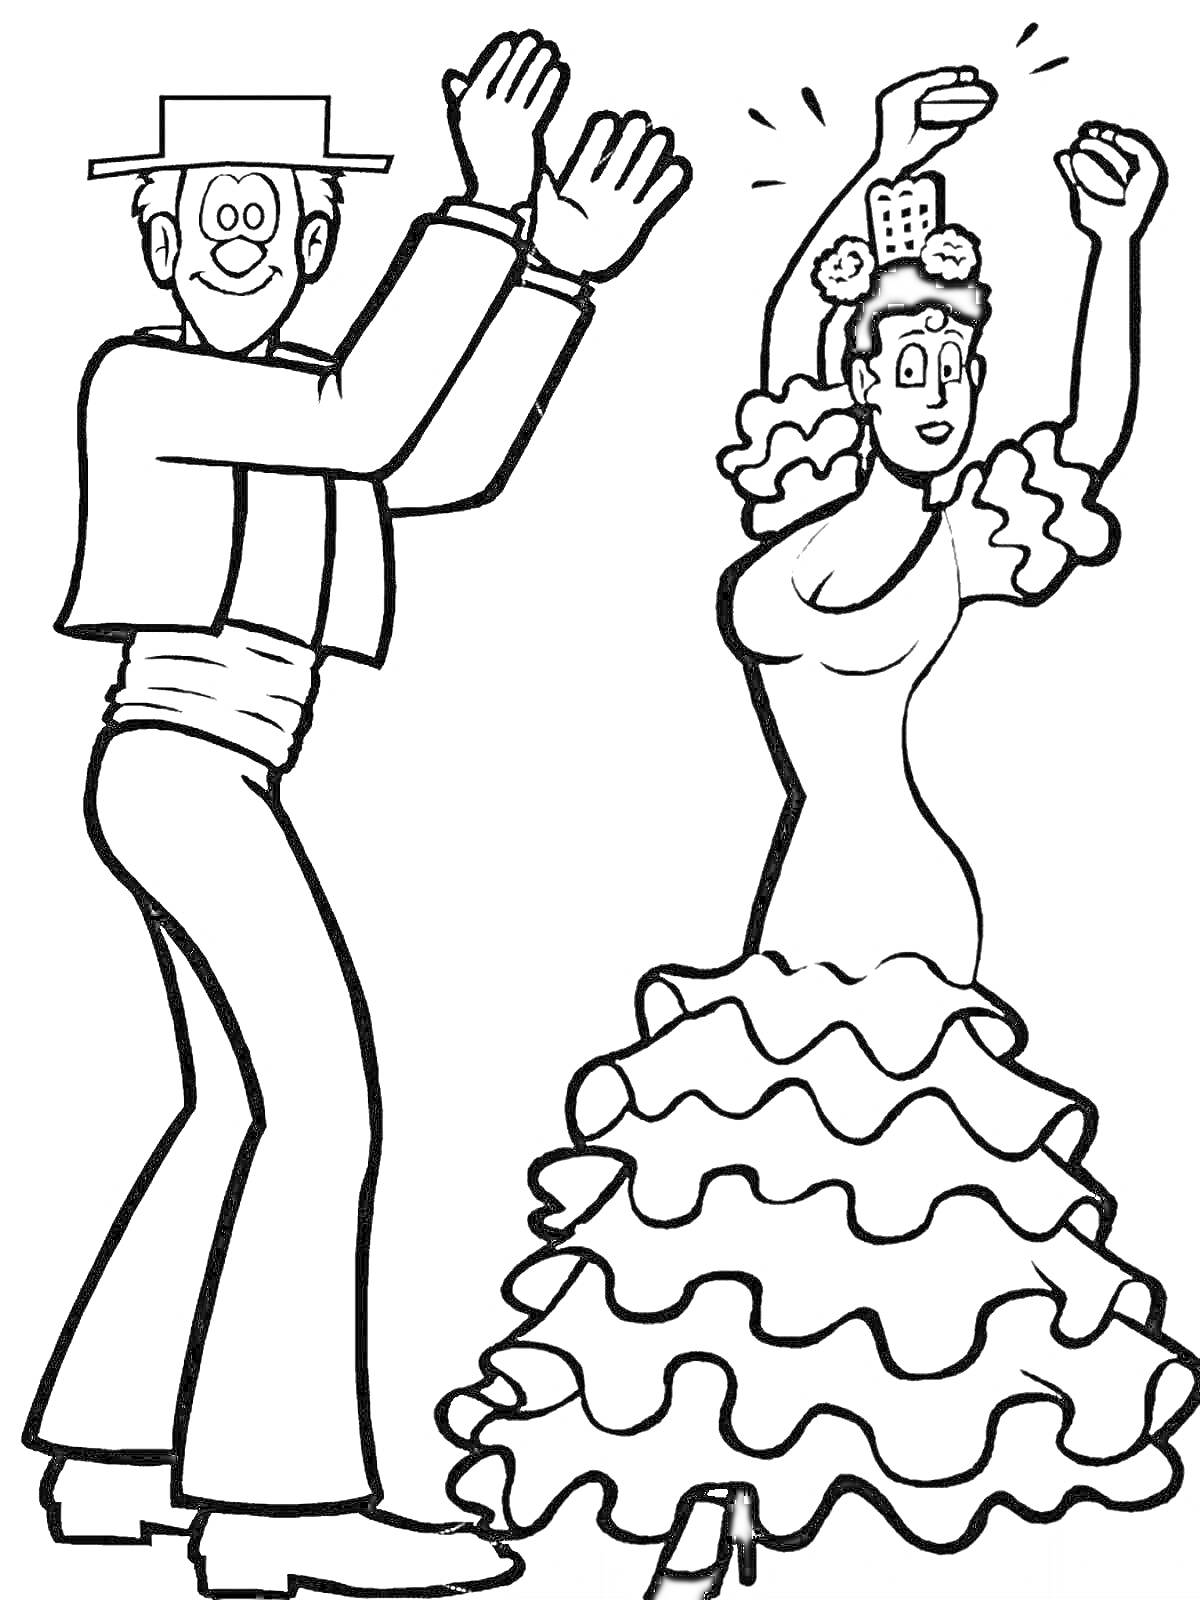 Раскраска Испанские танцоры фламенко: мужчина и женщина, танцующие фламенко, мужчина в шляпе и традиционной одежде, женщина в платье с воланами и с украшением на голове